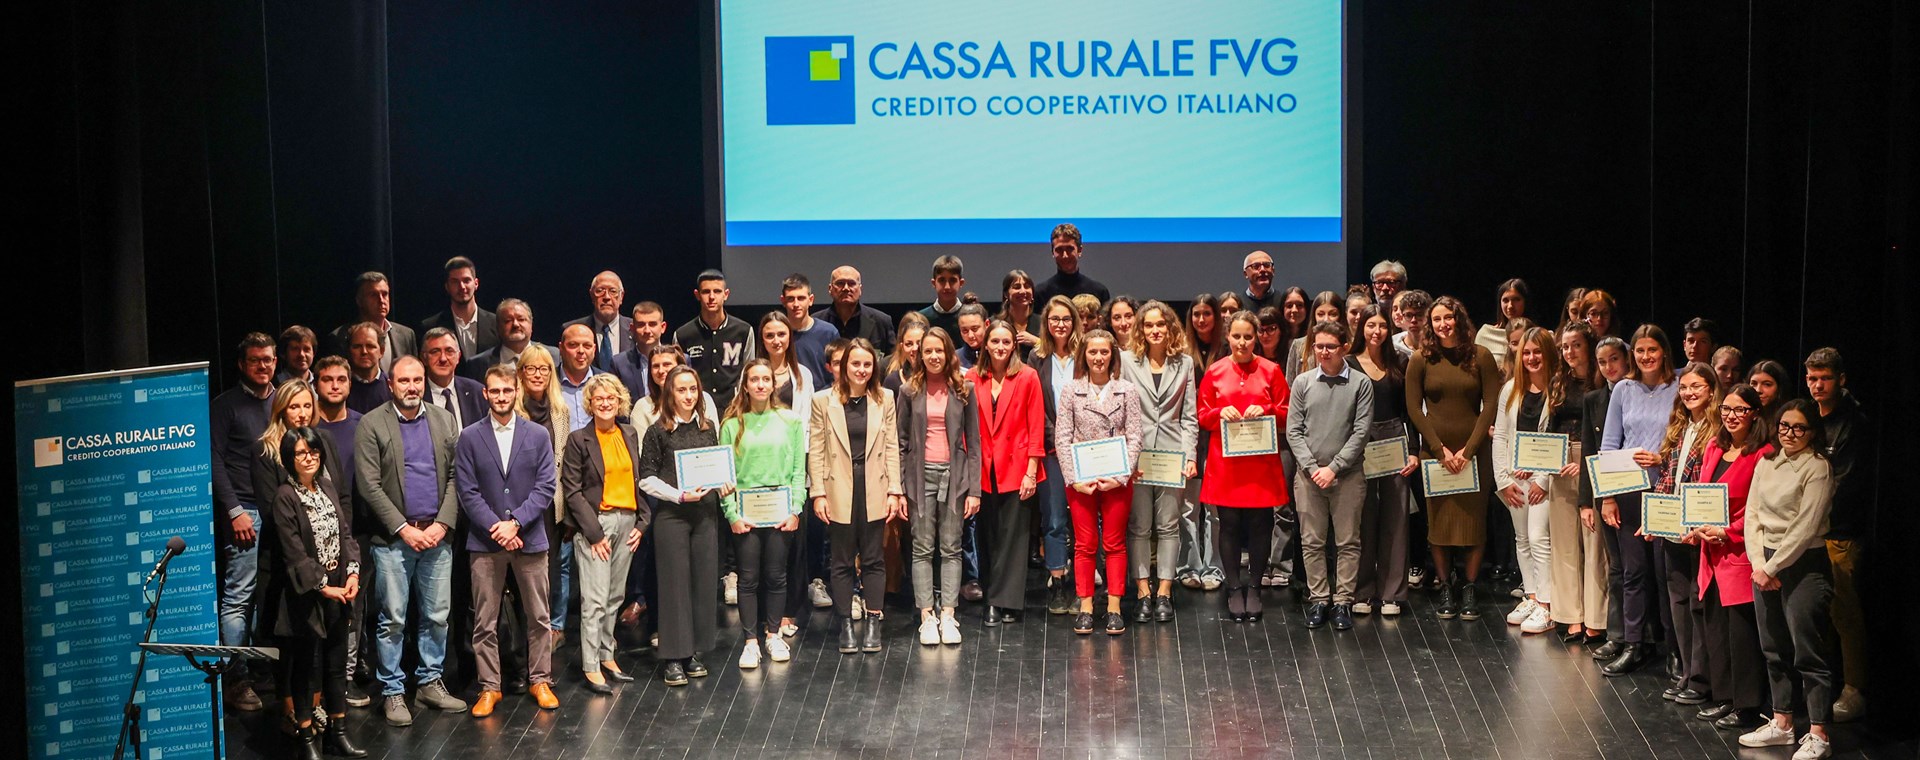 Gli studenti più bravi premiati da Cassa Rurale FVG, in 70 sul palco di Gradisca 